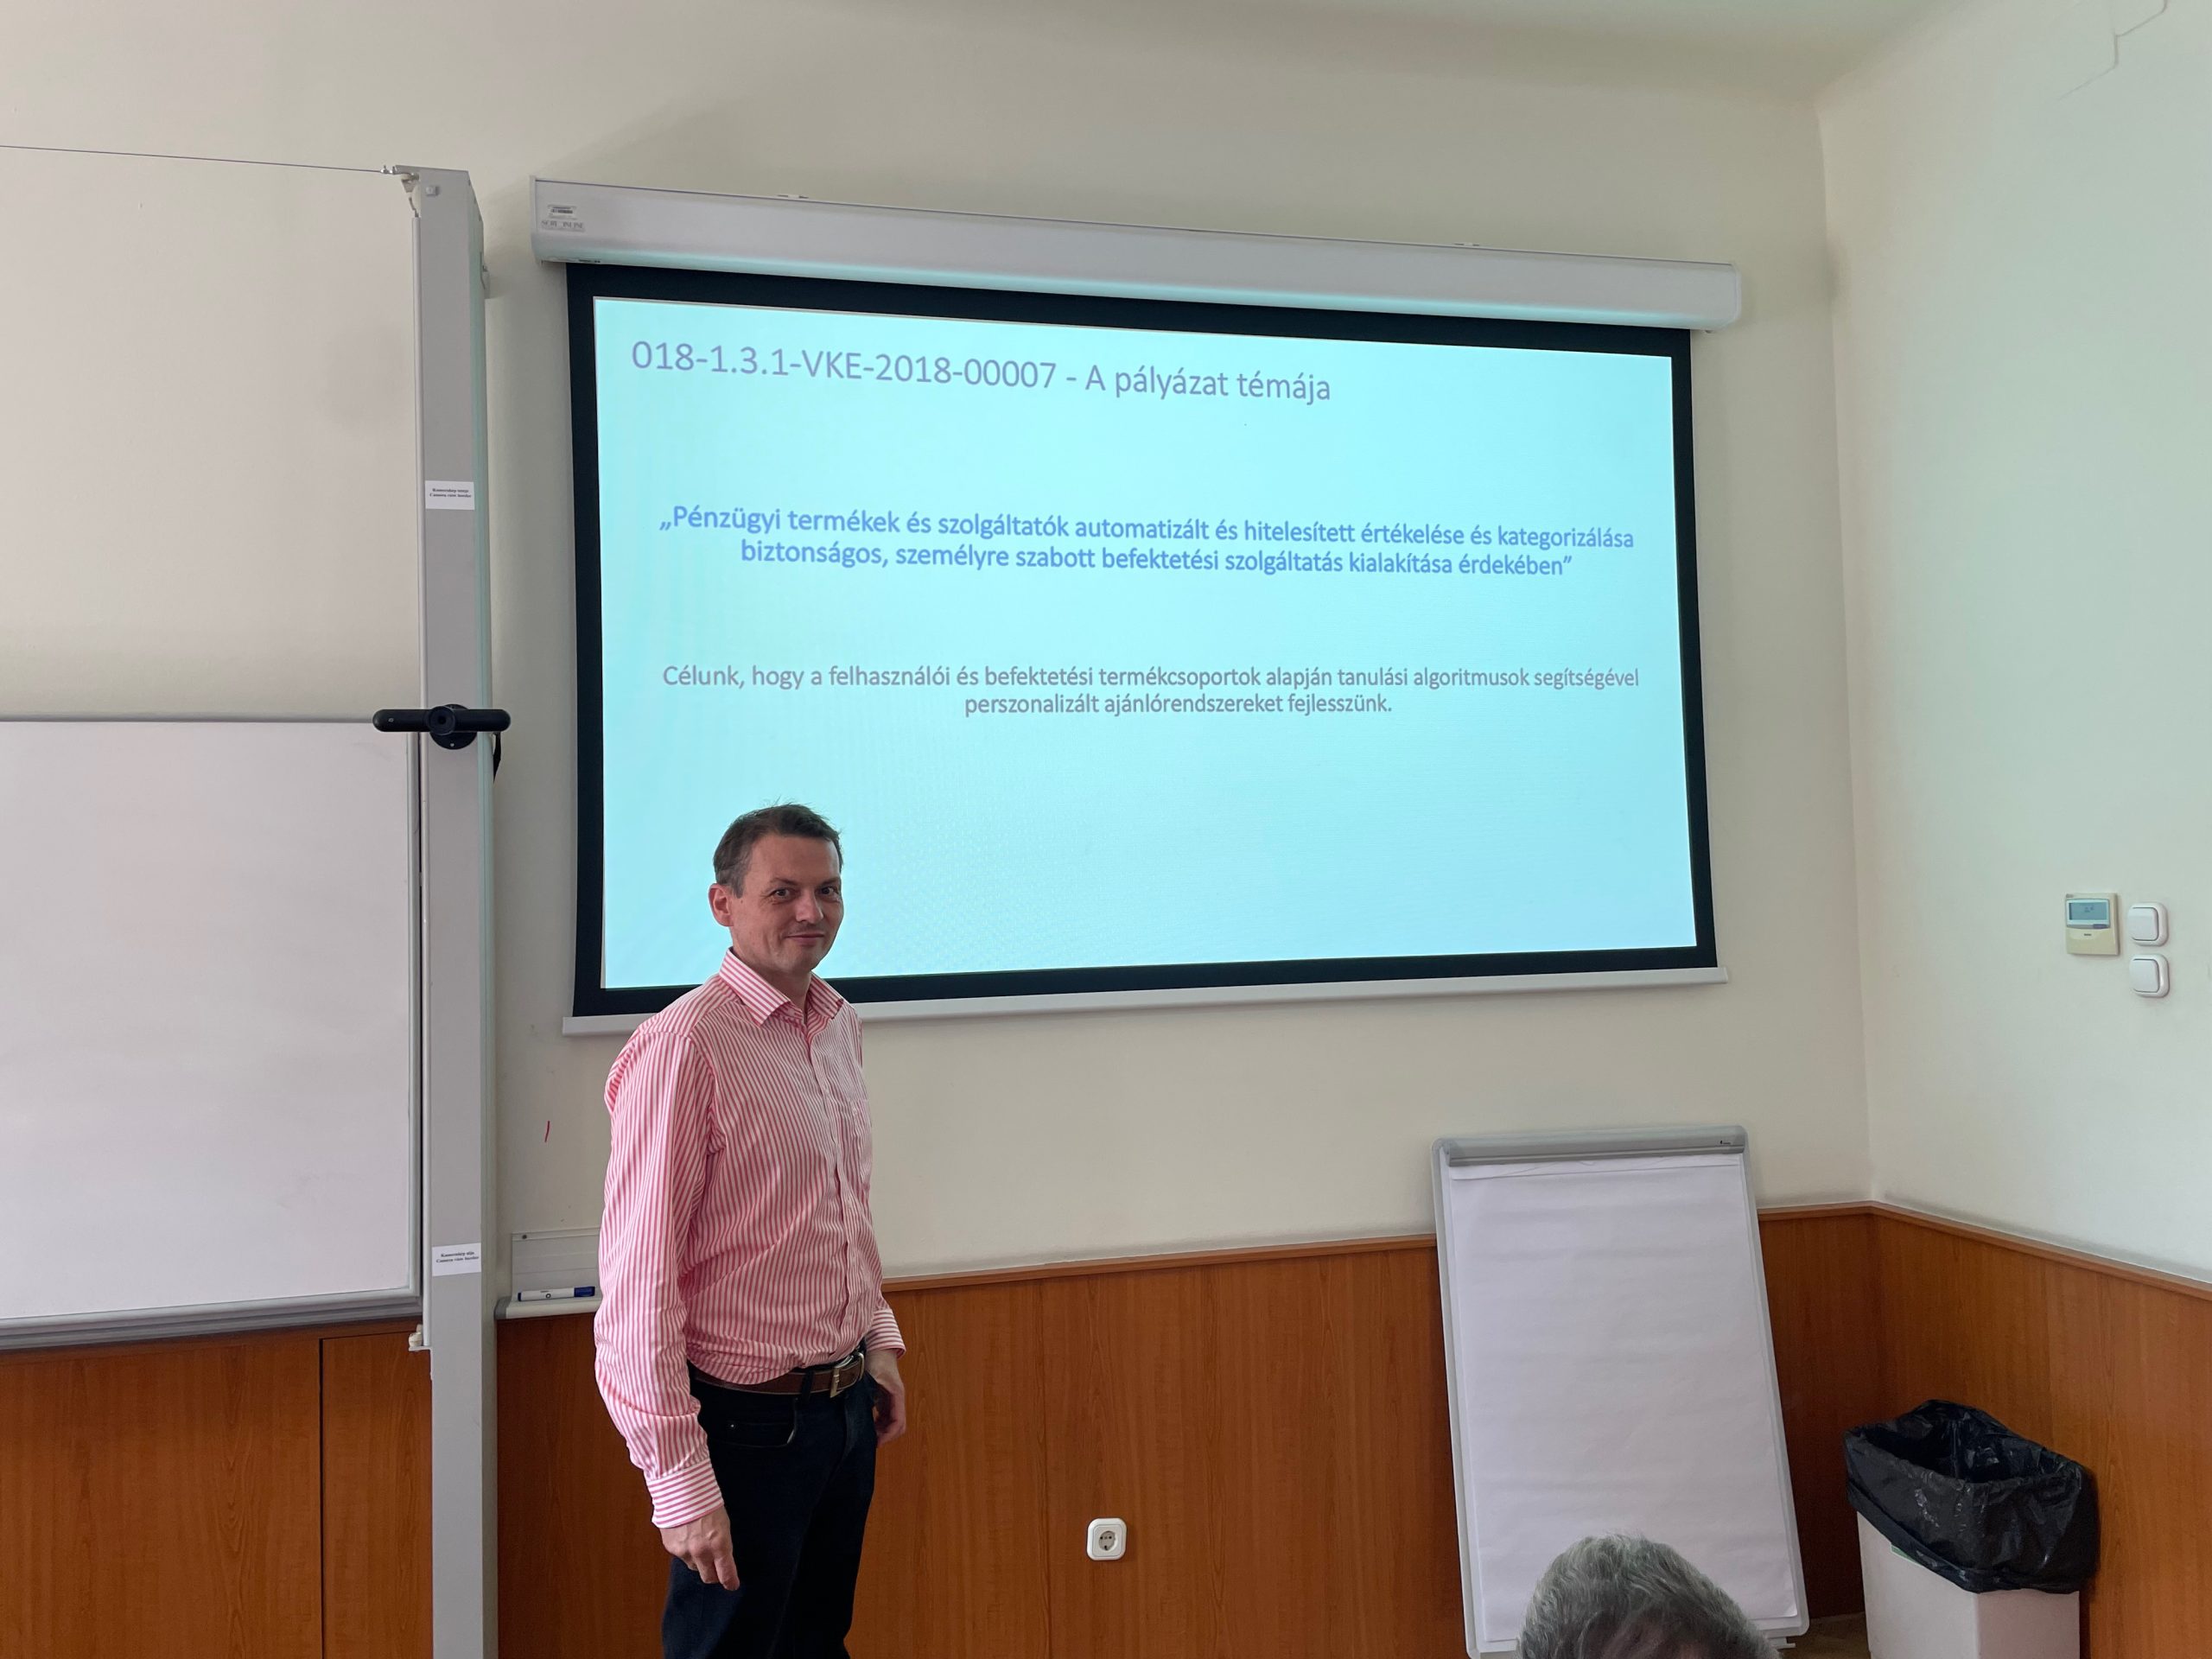 Corvinus Kutatási Hét – A Dorsum is előadást tartott a Corvinus Egyetemmel és a Net Média Zrt-vel közösen a 2018-1.3.1-VKE-2018-00007-es projektről